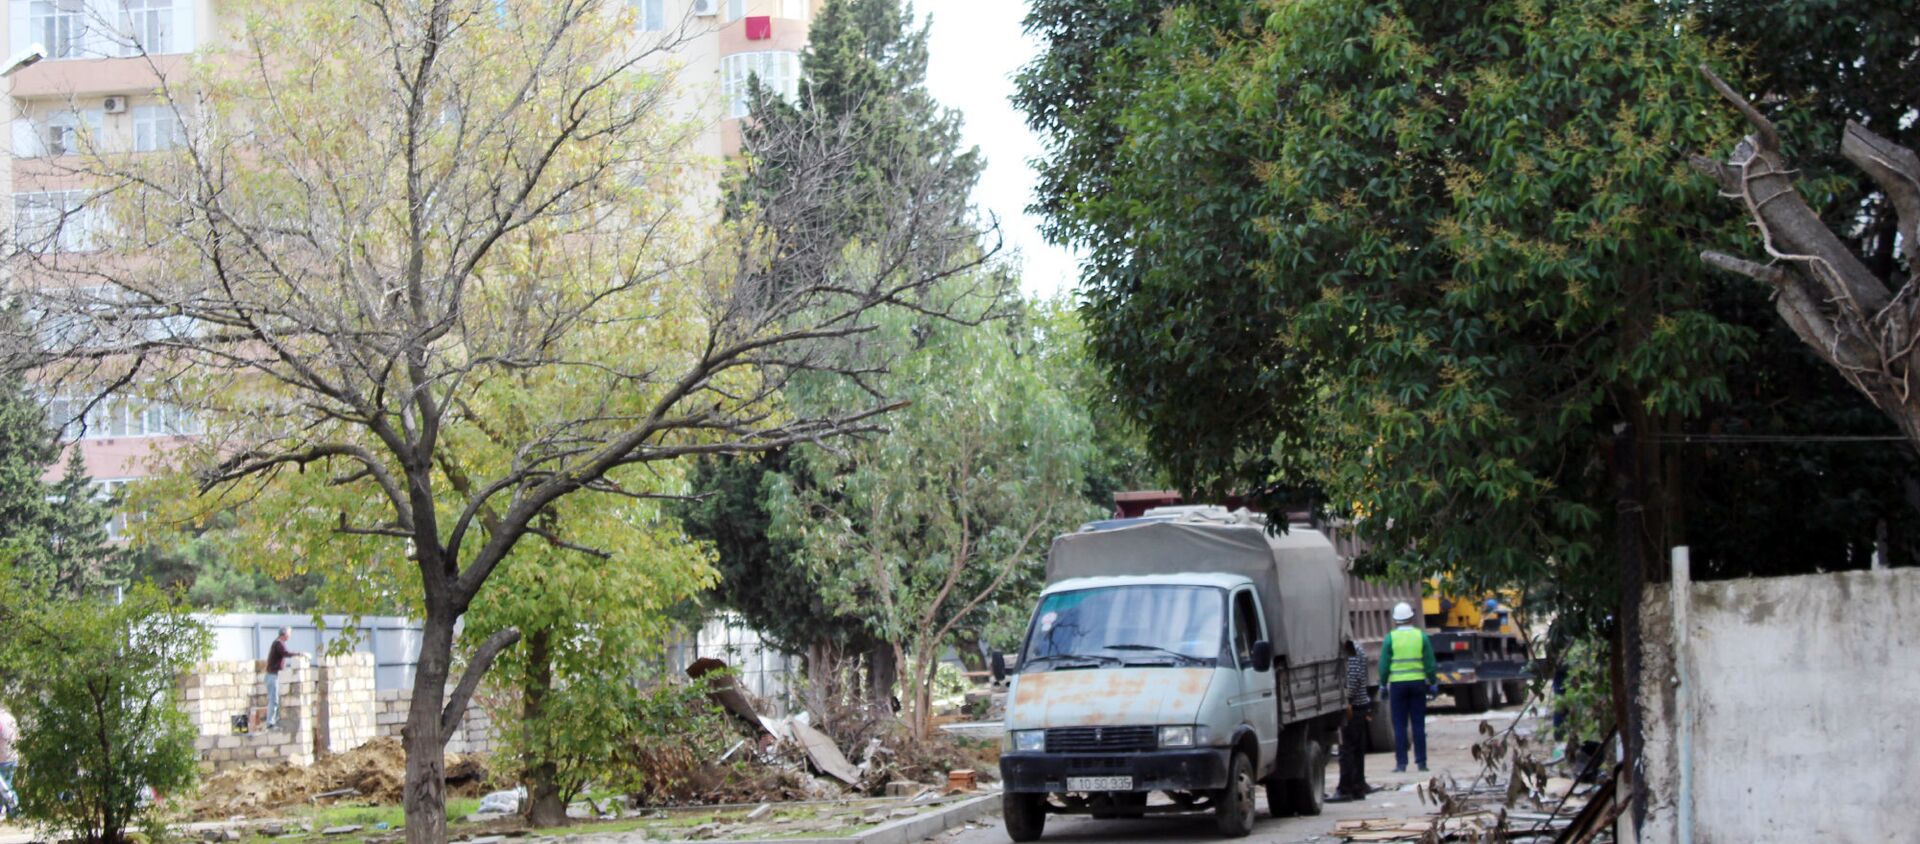 Вырубка деревьев возле станции метро Иншаатчылар по улице Шарифзаде, 162 - Sputnik Азербайджан, 1920, 02.03.2021